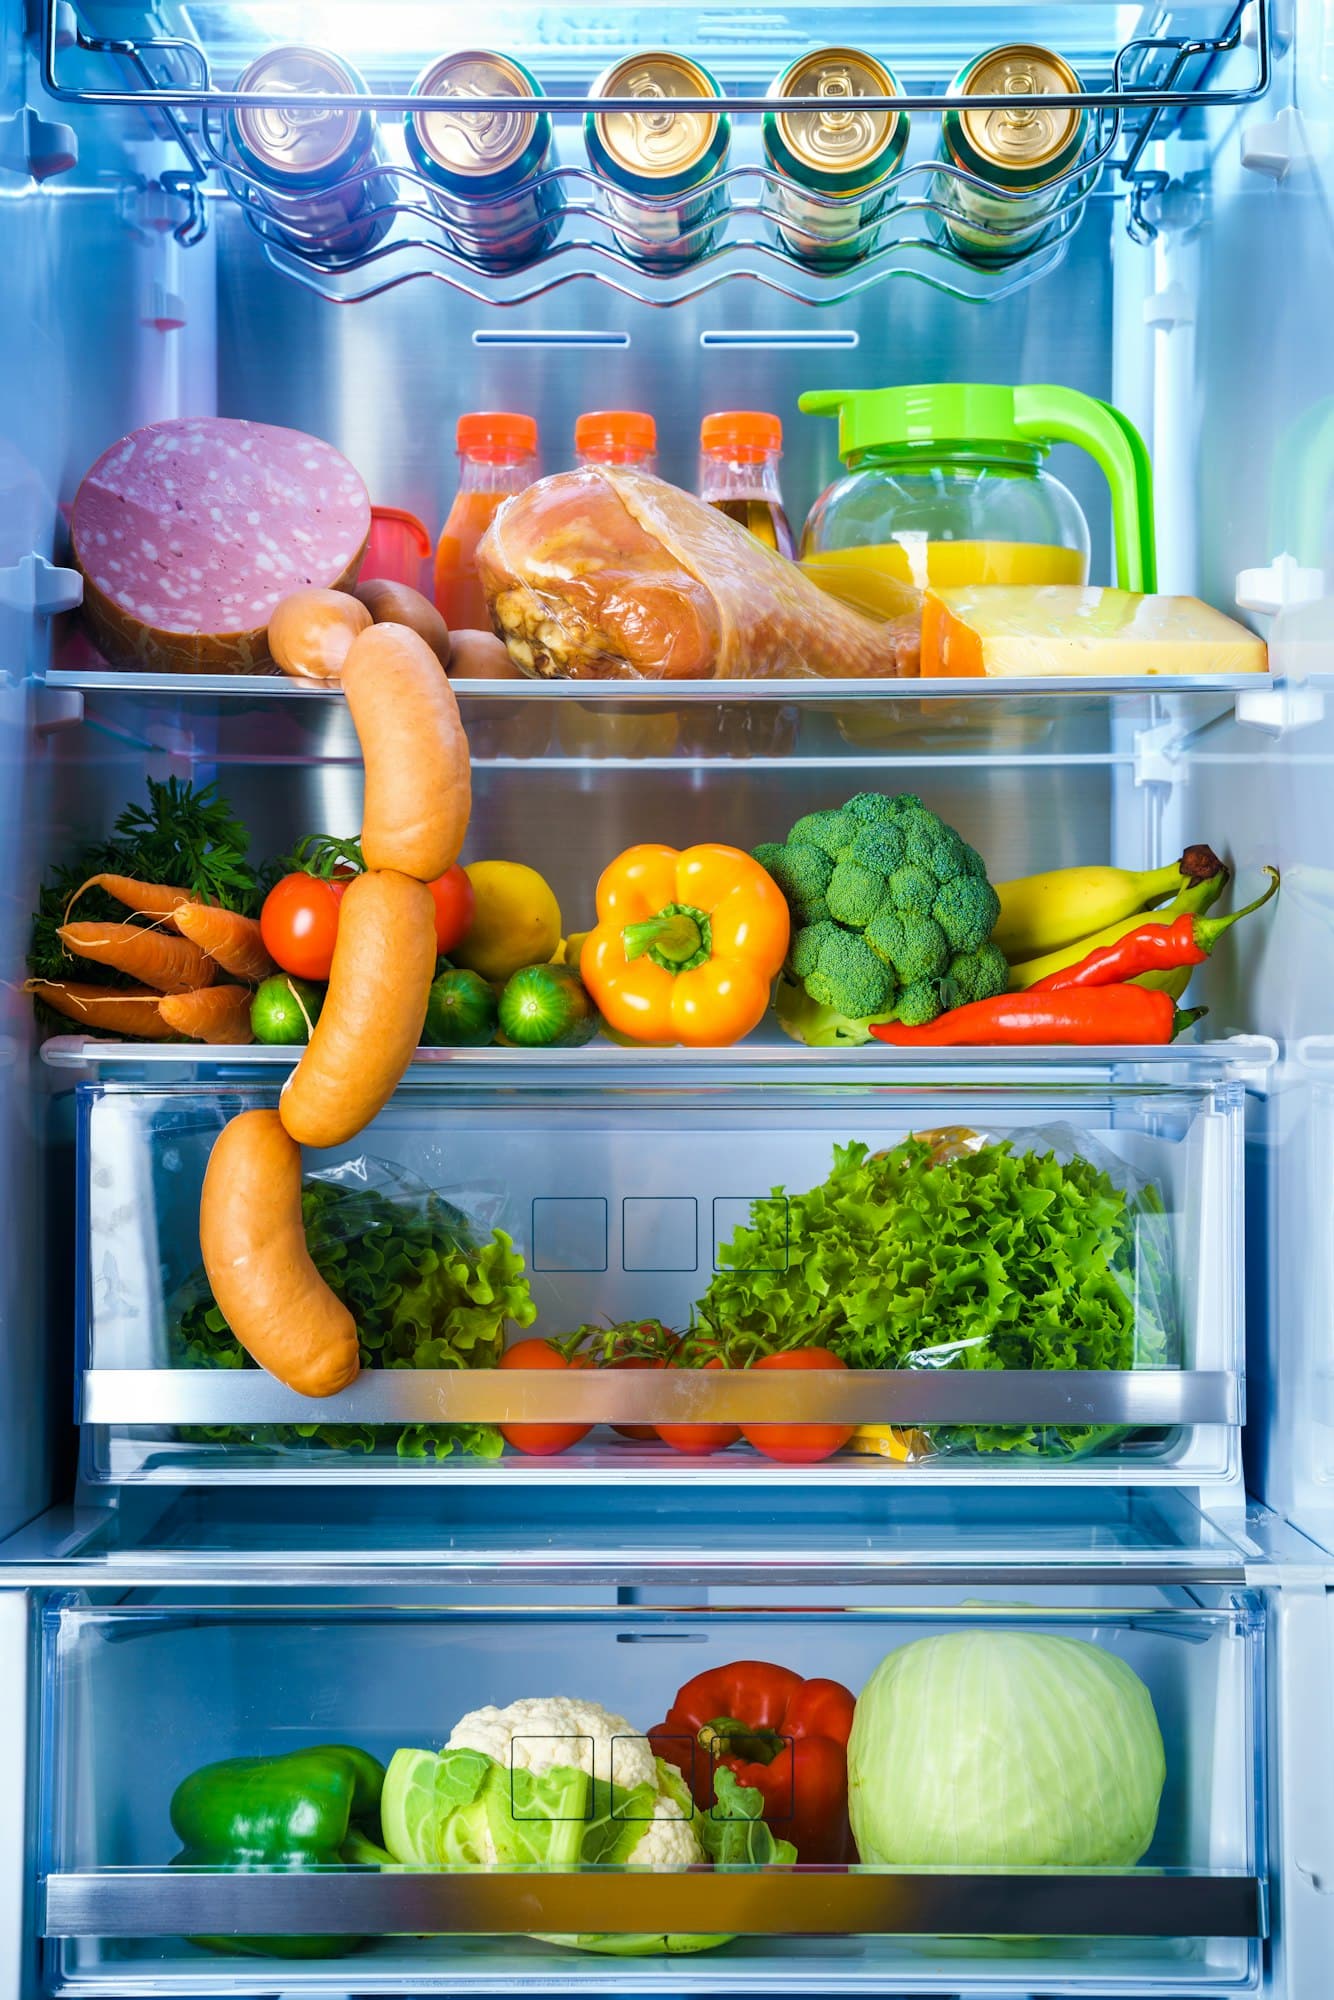 Διατροφή: 4 τροφές που δεν αντέχουν πάνω από μία μέρα στο ψυγείο